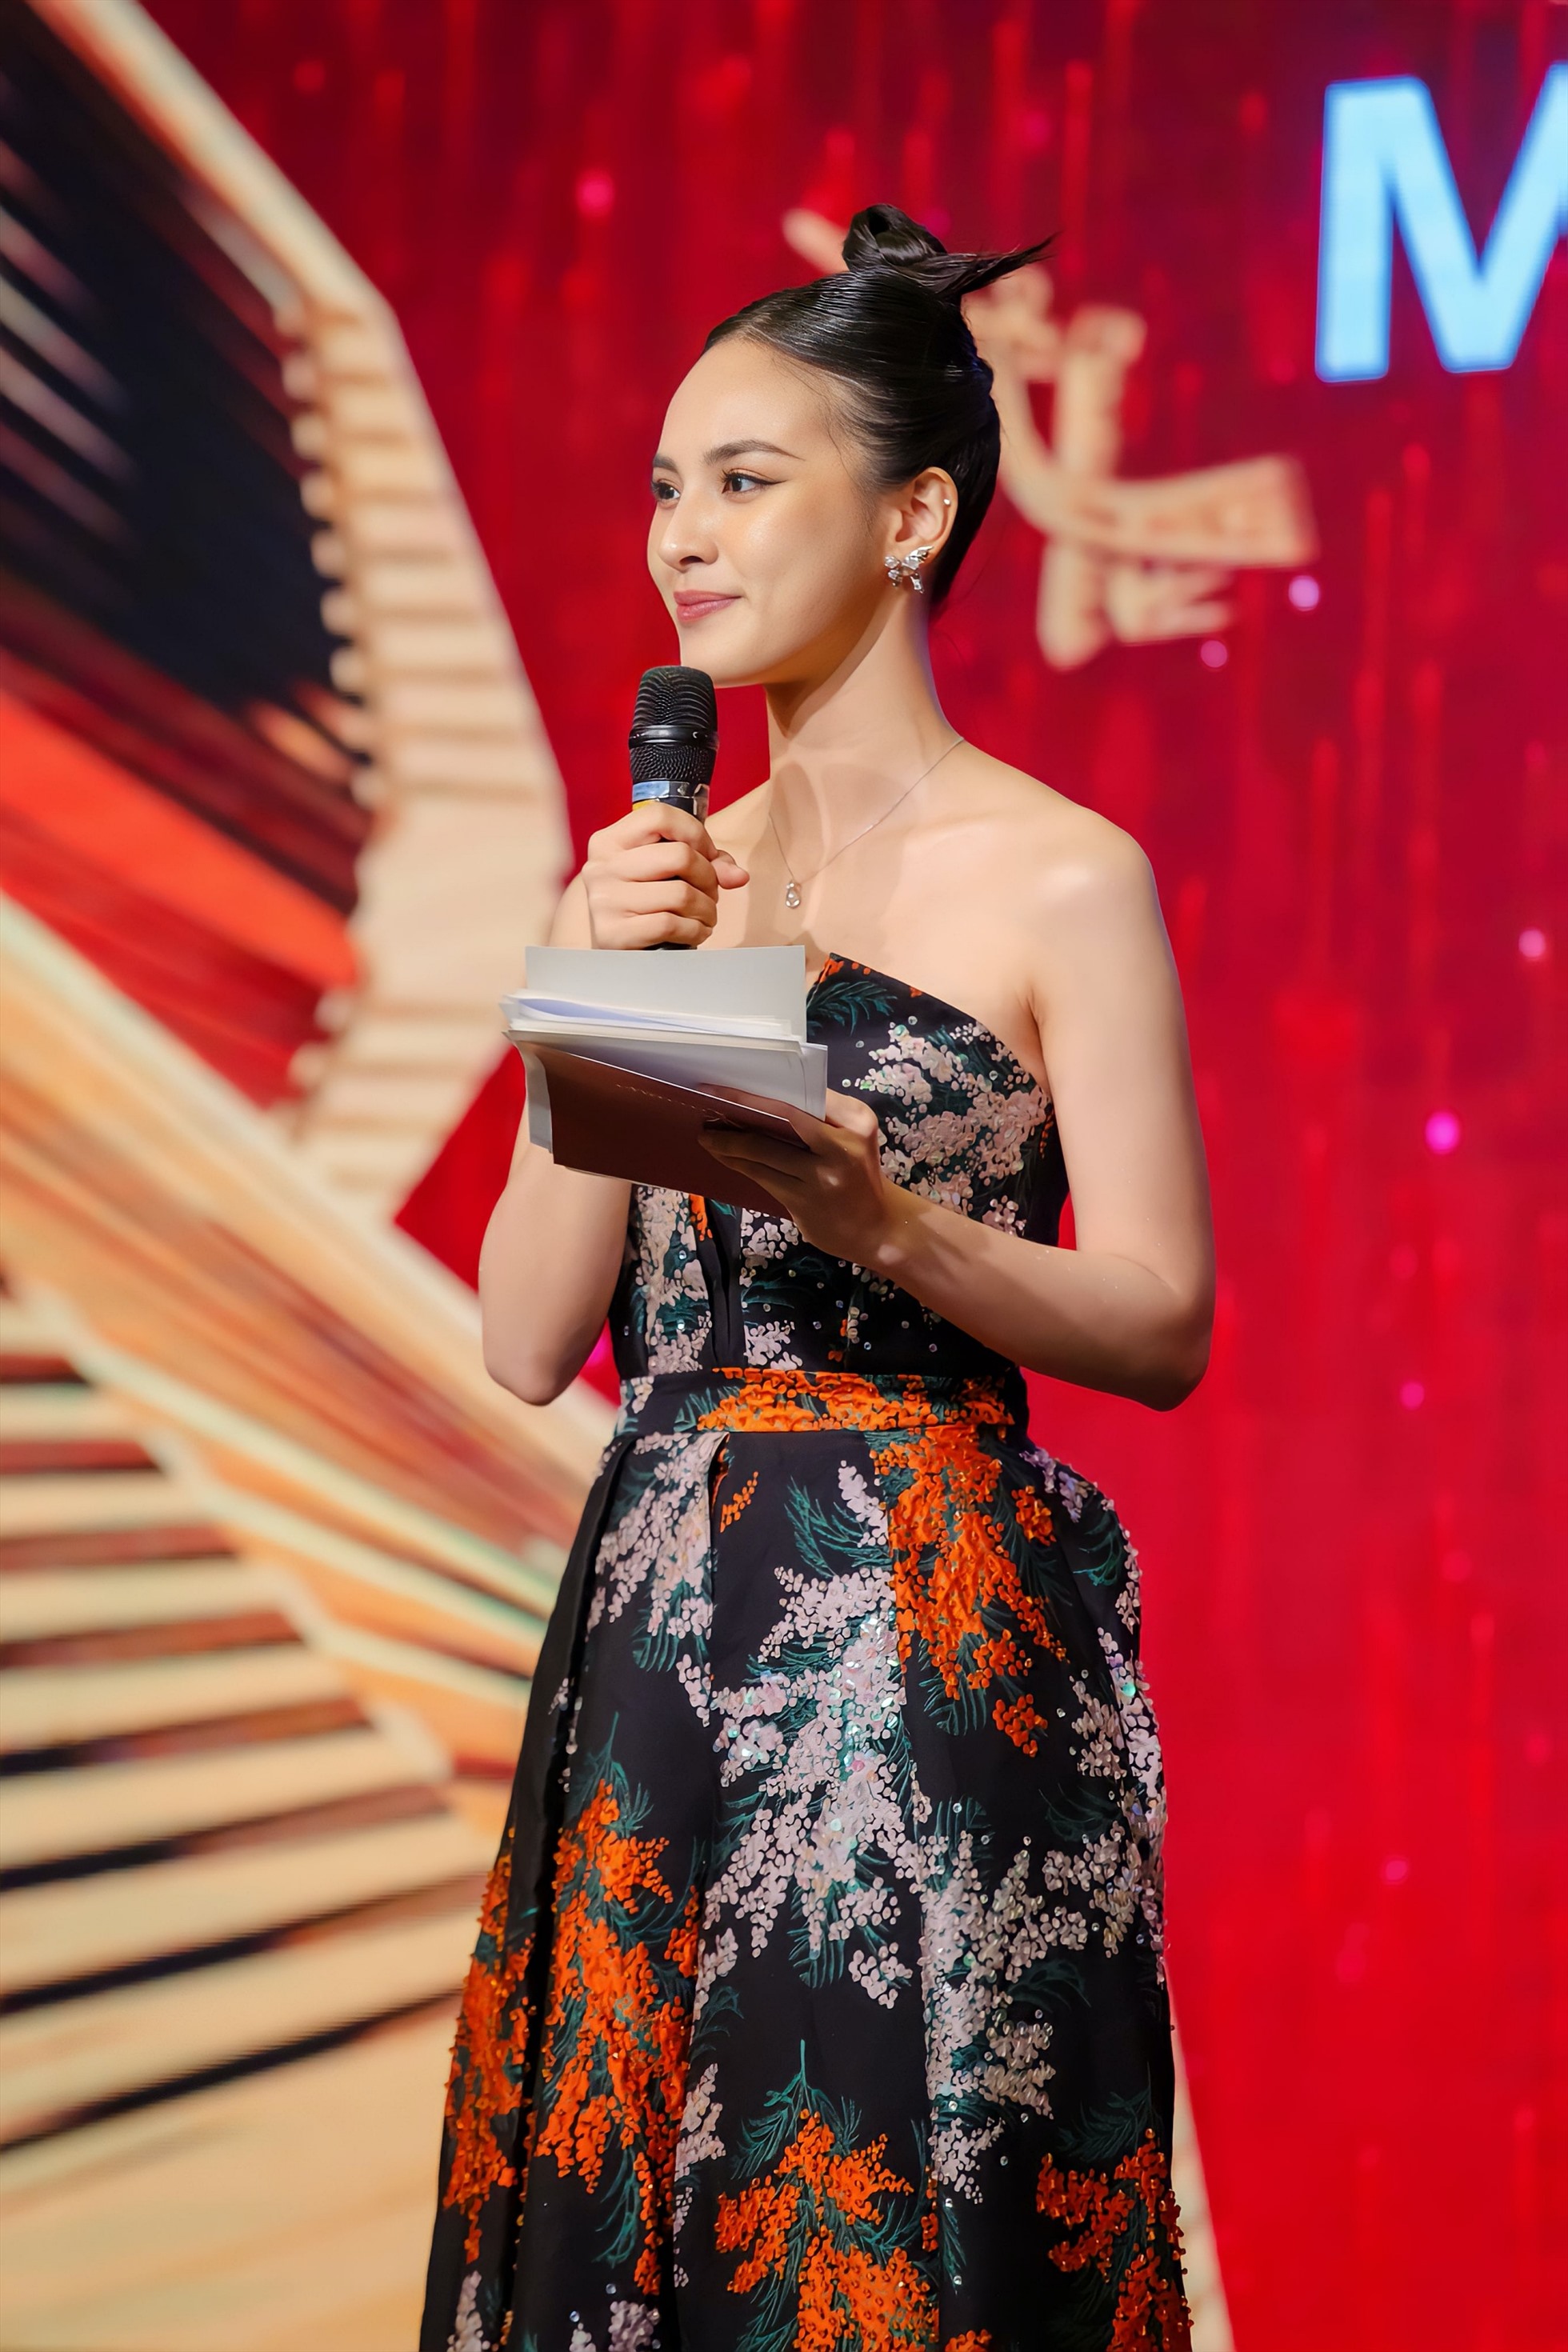 Quỳnh Nga đã từ bỏ danh hiệu Miss Charm Việt Nam 2023 sau 2 năm Miss Charm bị hoãn vì COVID-19. Ảnh: Nhân vật cung cấp.